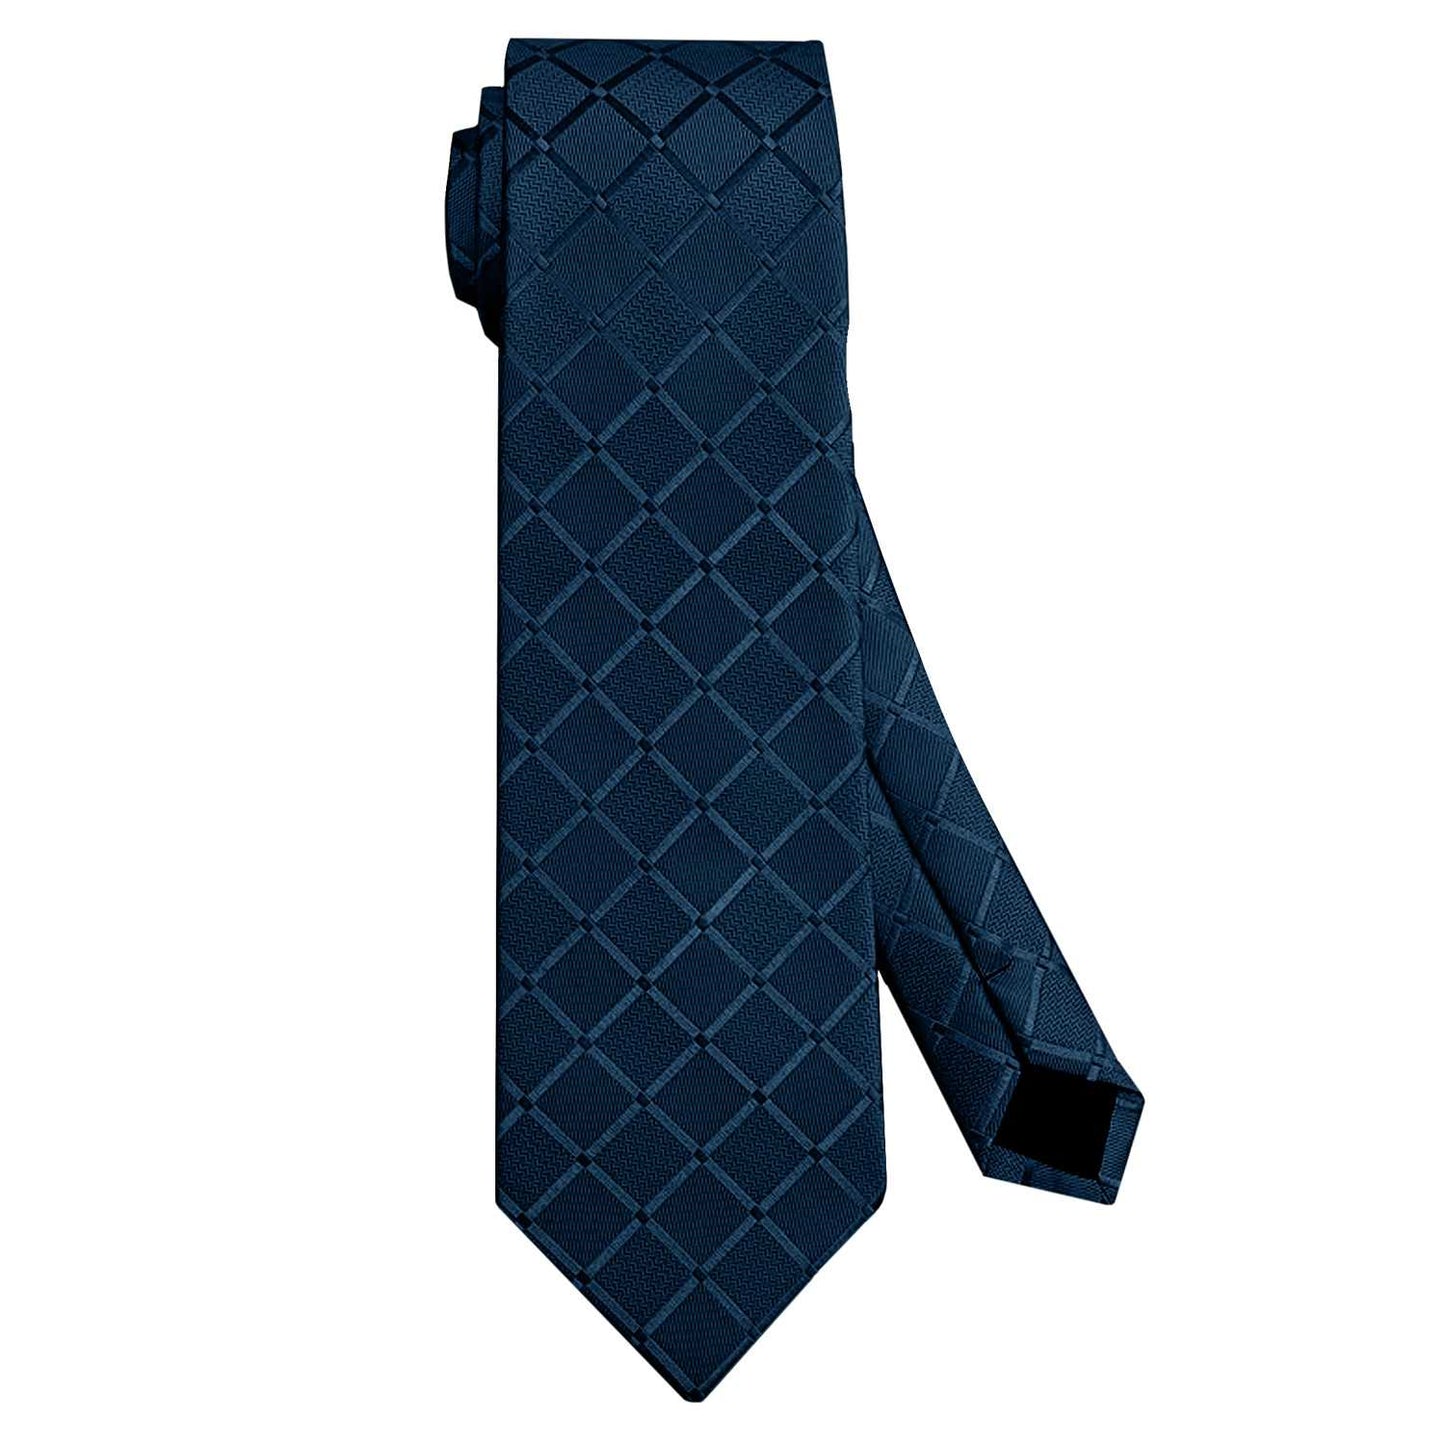 Corbata para Hombre, Conjunto de Corbata y Pañuelo de bolsillo, a Cuadros, Color Azul Oscuro, Hecha a mano, Elegante